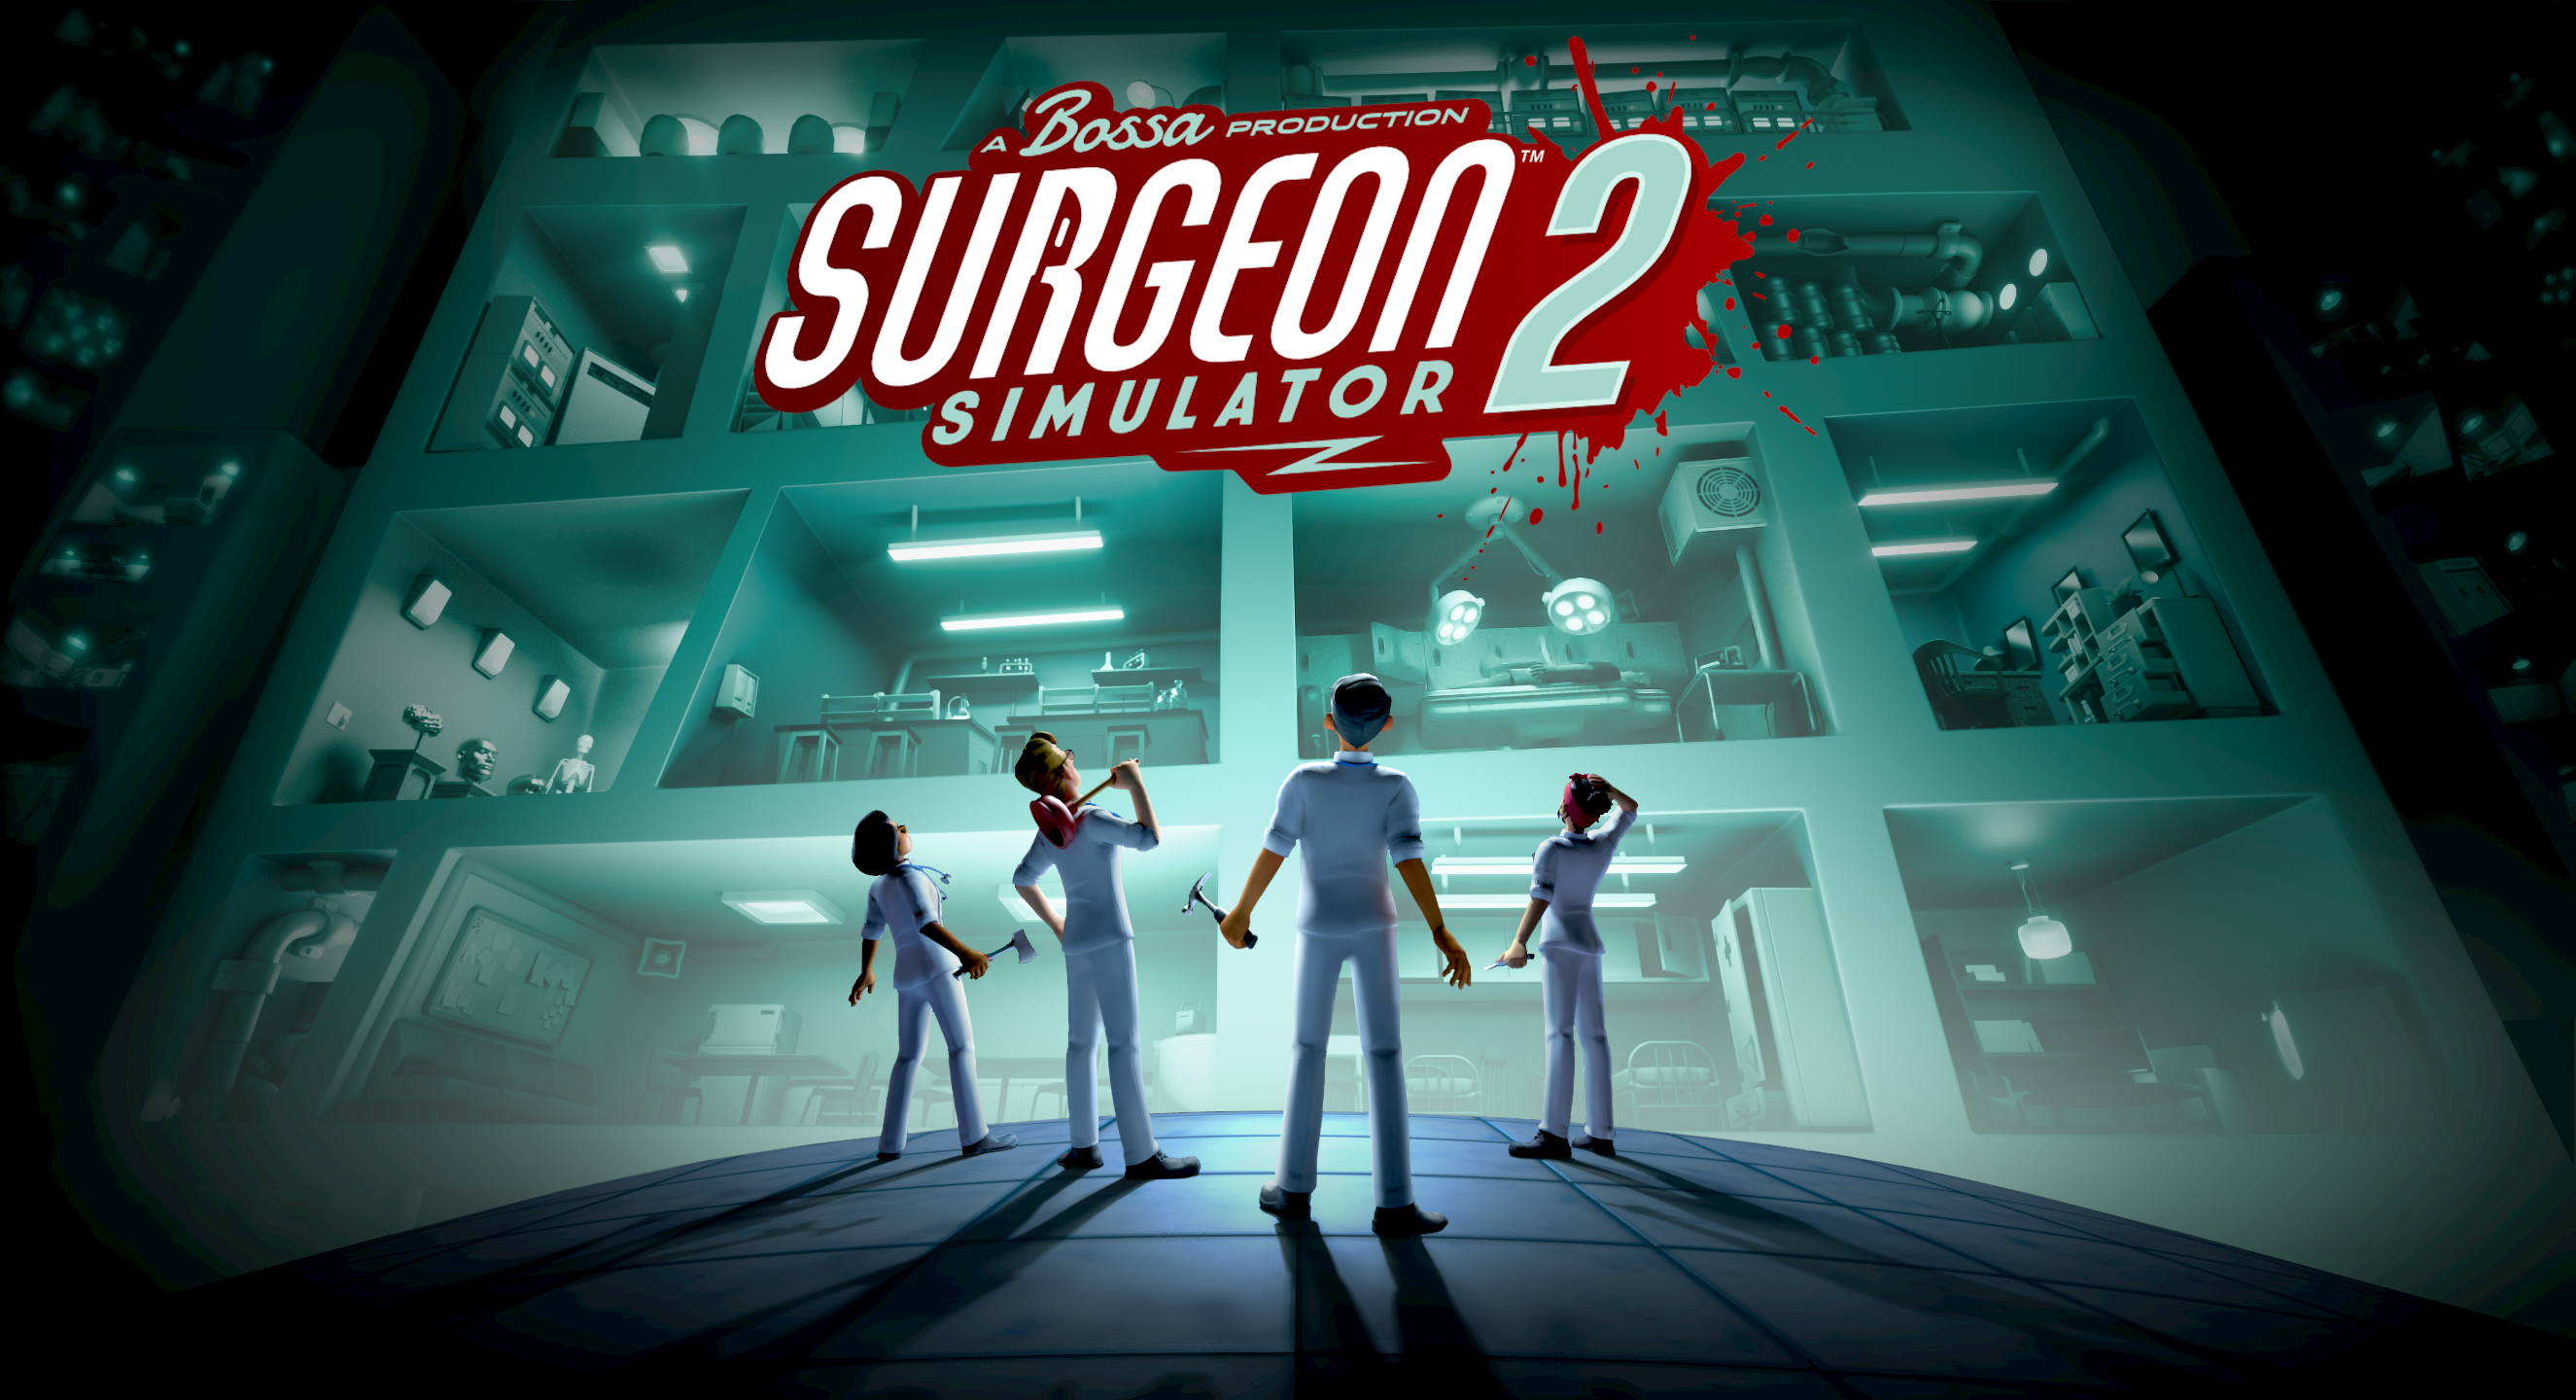 ハチャメチャ外科手術シミュレーション・ゲーム
『Surgeon Simulator 2』が8月27日リリース！
Bossa Labs作成モードの紹介ビデオも公開！